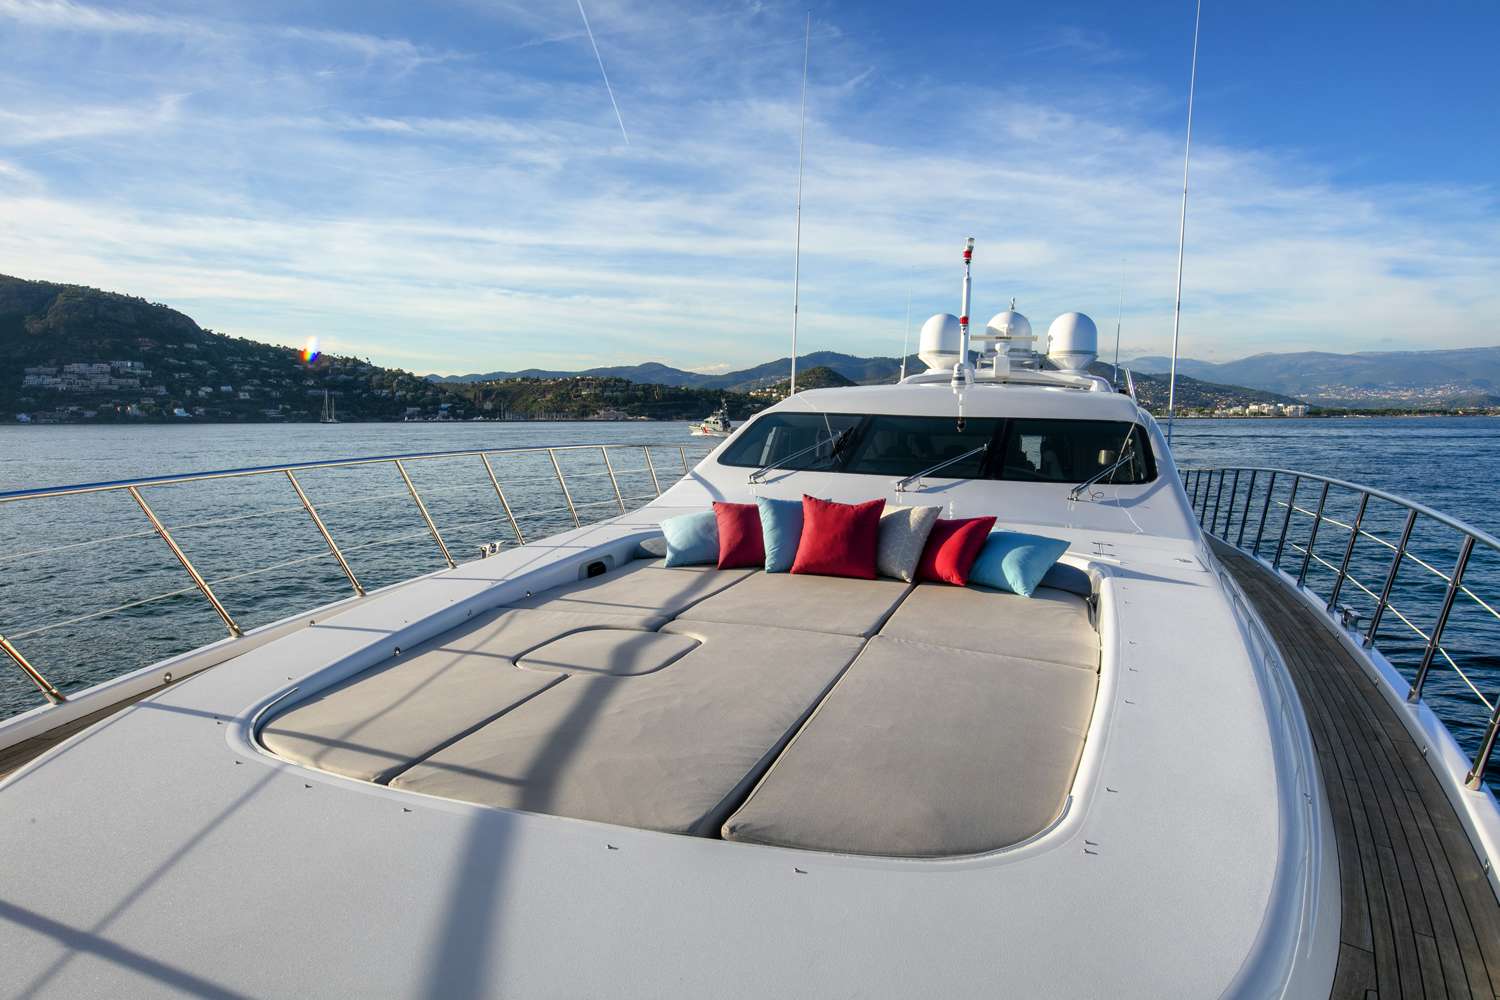 Bo - Yacht Charter Monaco & Boat hire in Fr. Riviera, Corsica & Sardinia 4